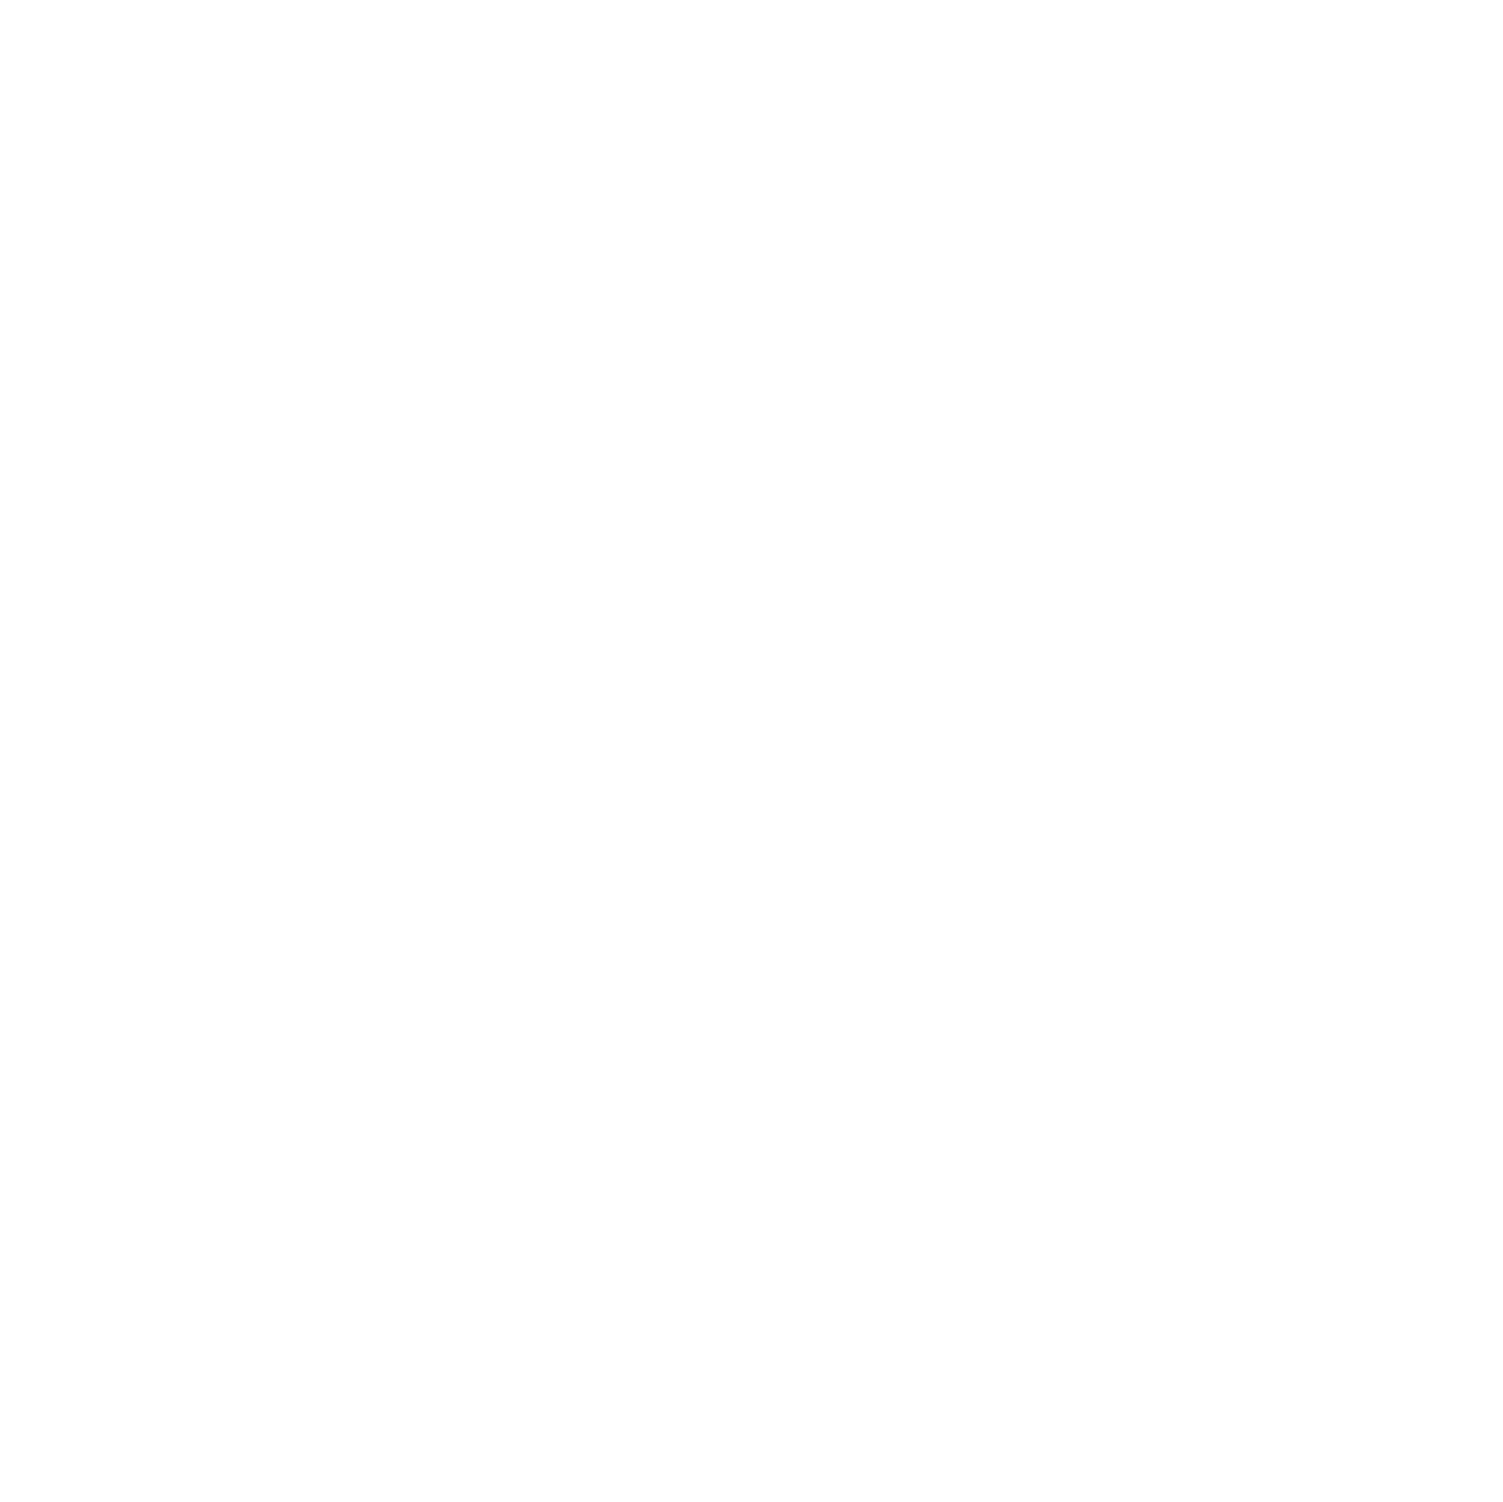 abrdn ETF logo pour fonds sombres (PNG transparent)